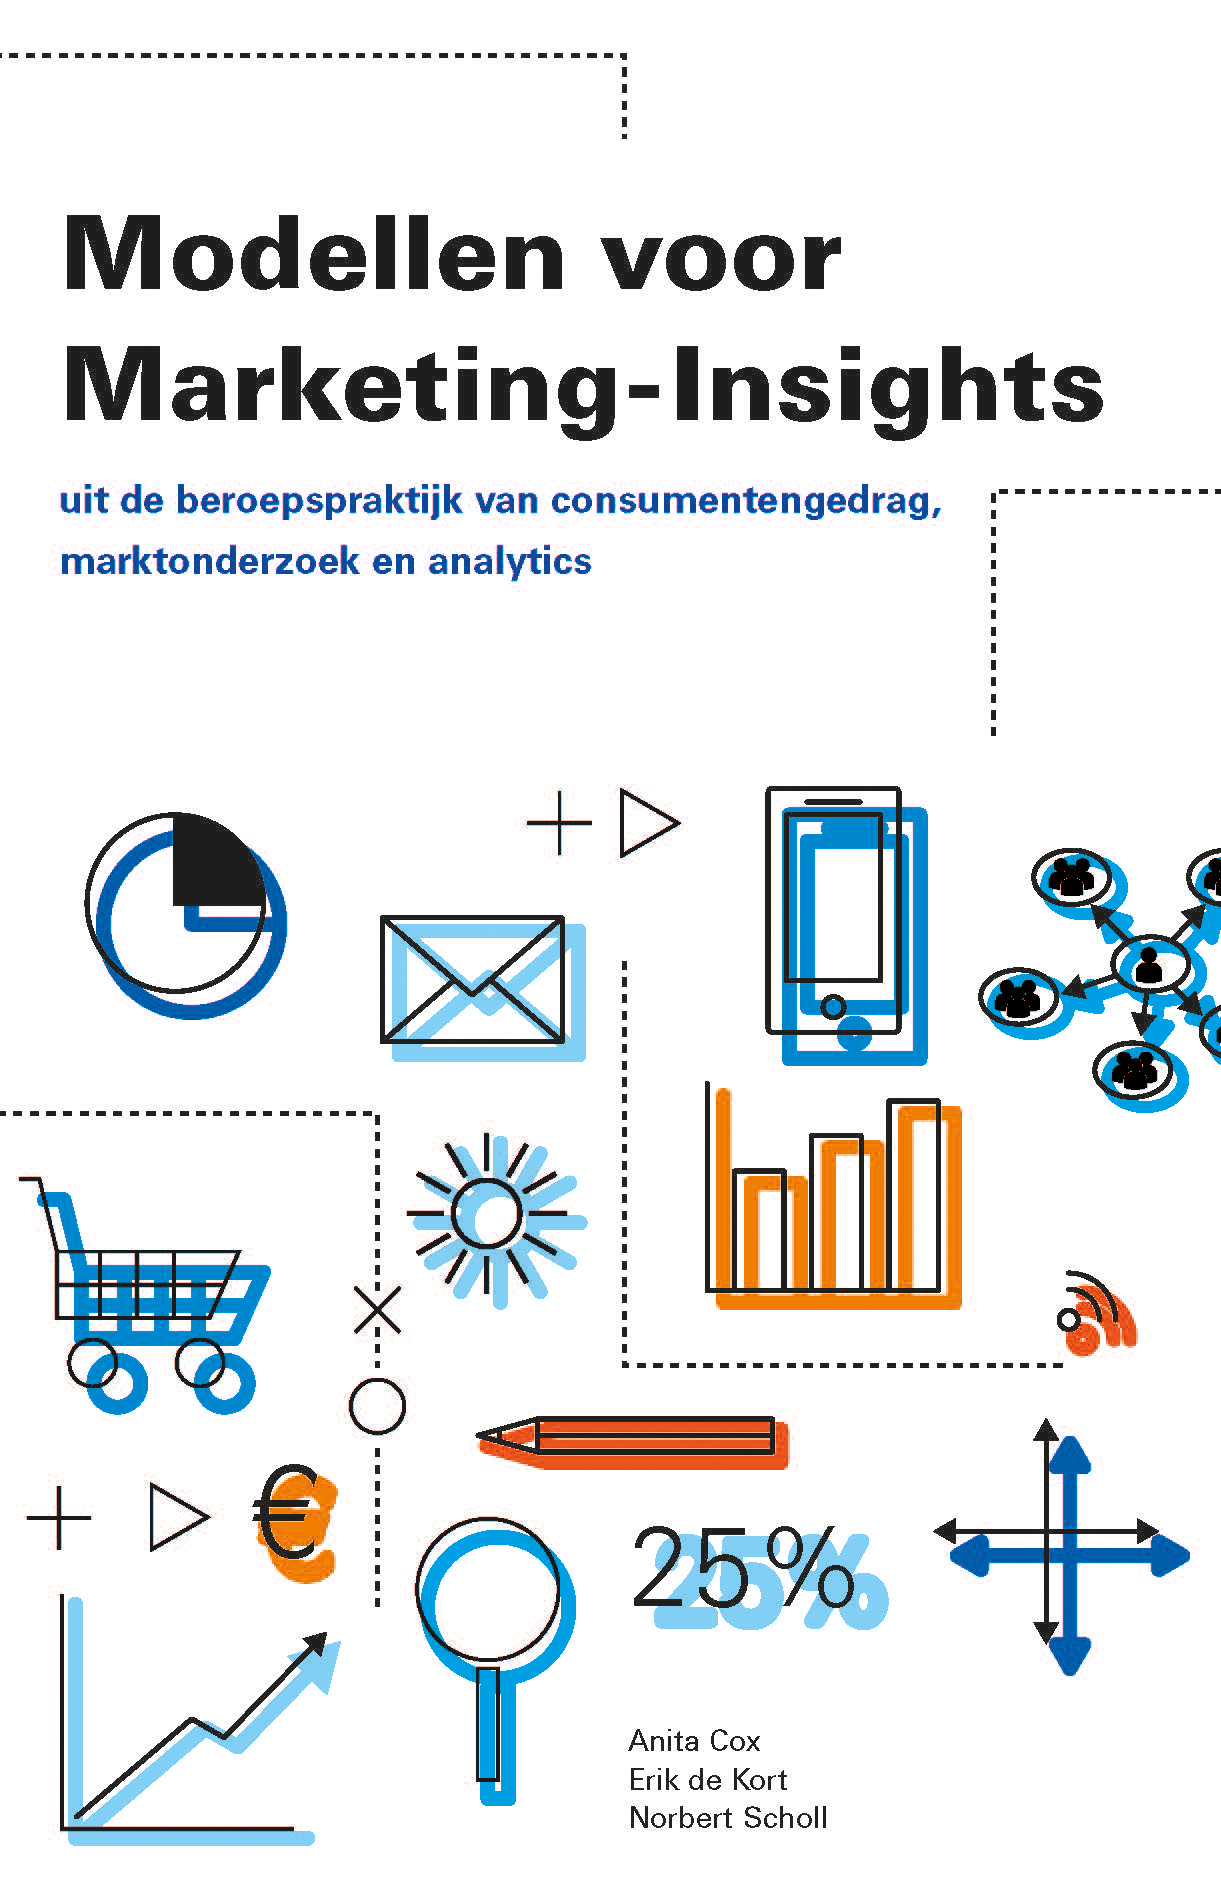 Modellen voor Marketing-Insights (Ebook)